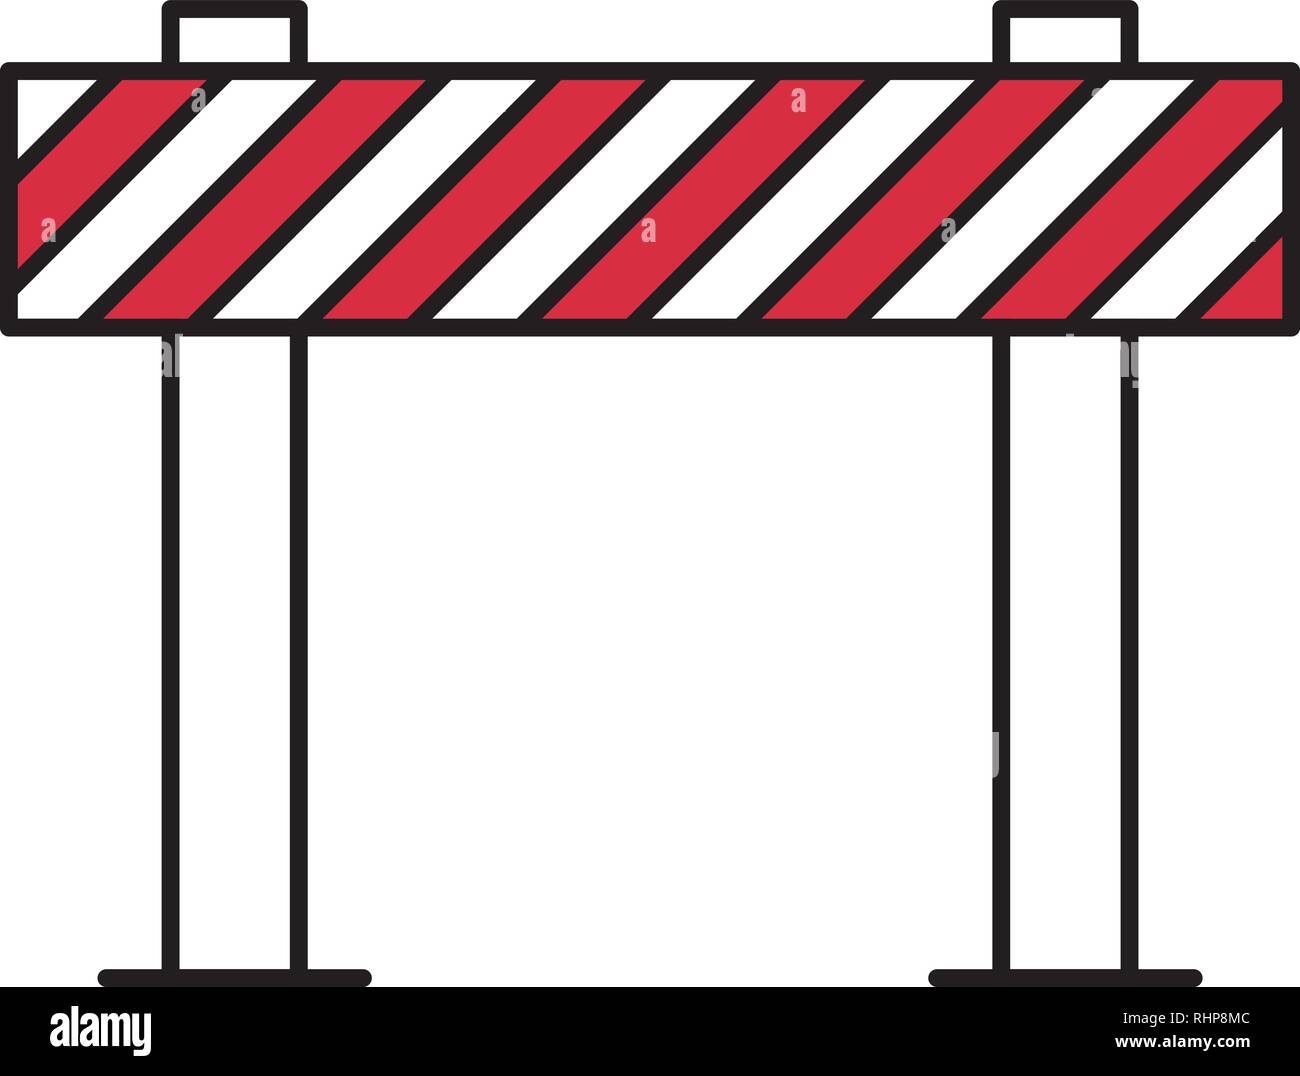 Road Block Sign, Traffic Barrier Vector Illustration Stock Vector